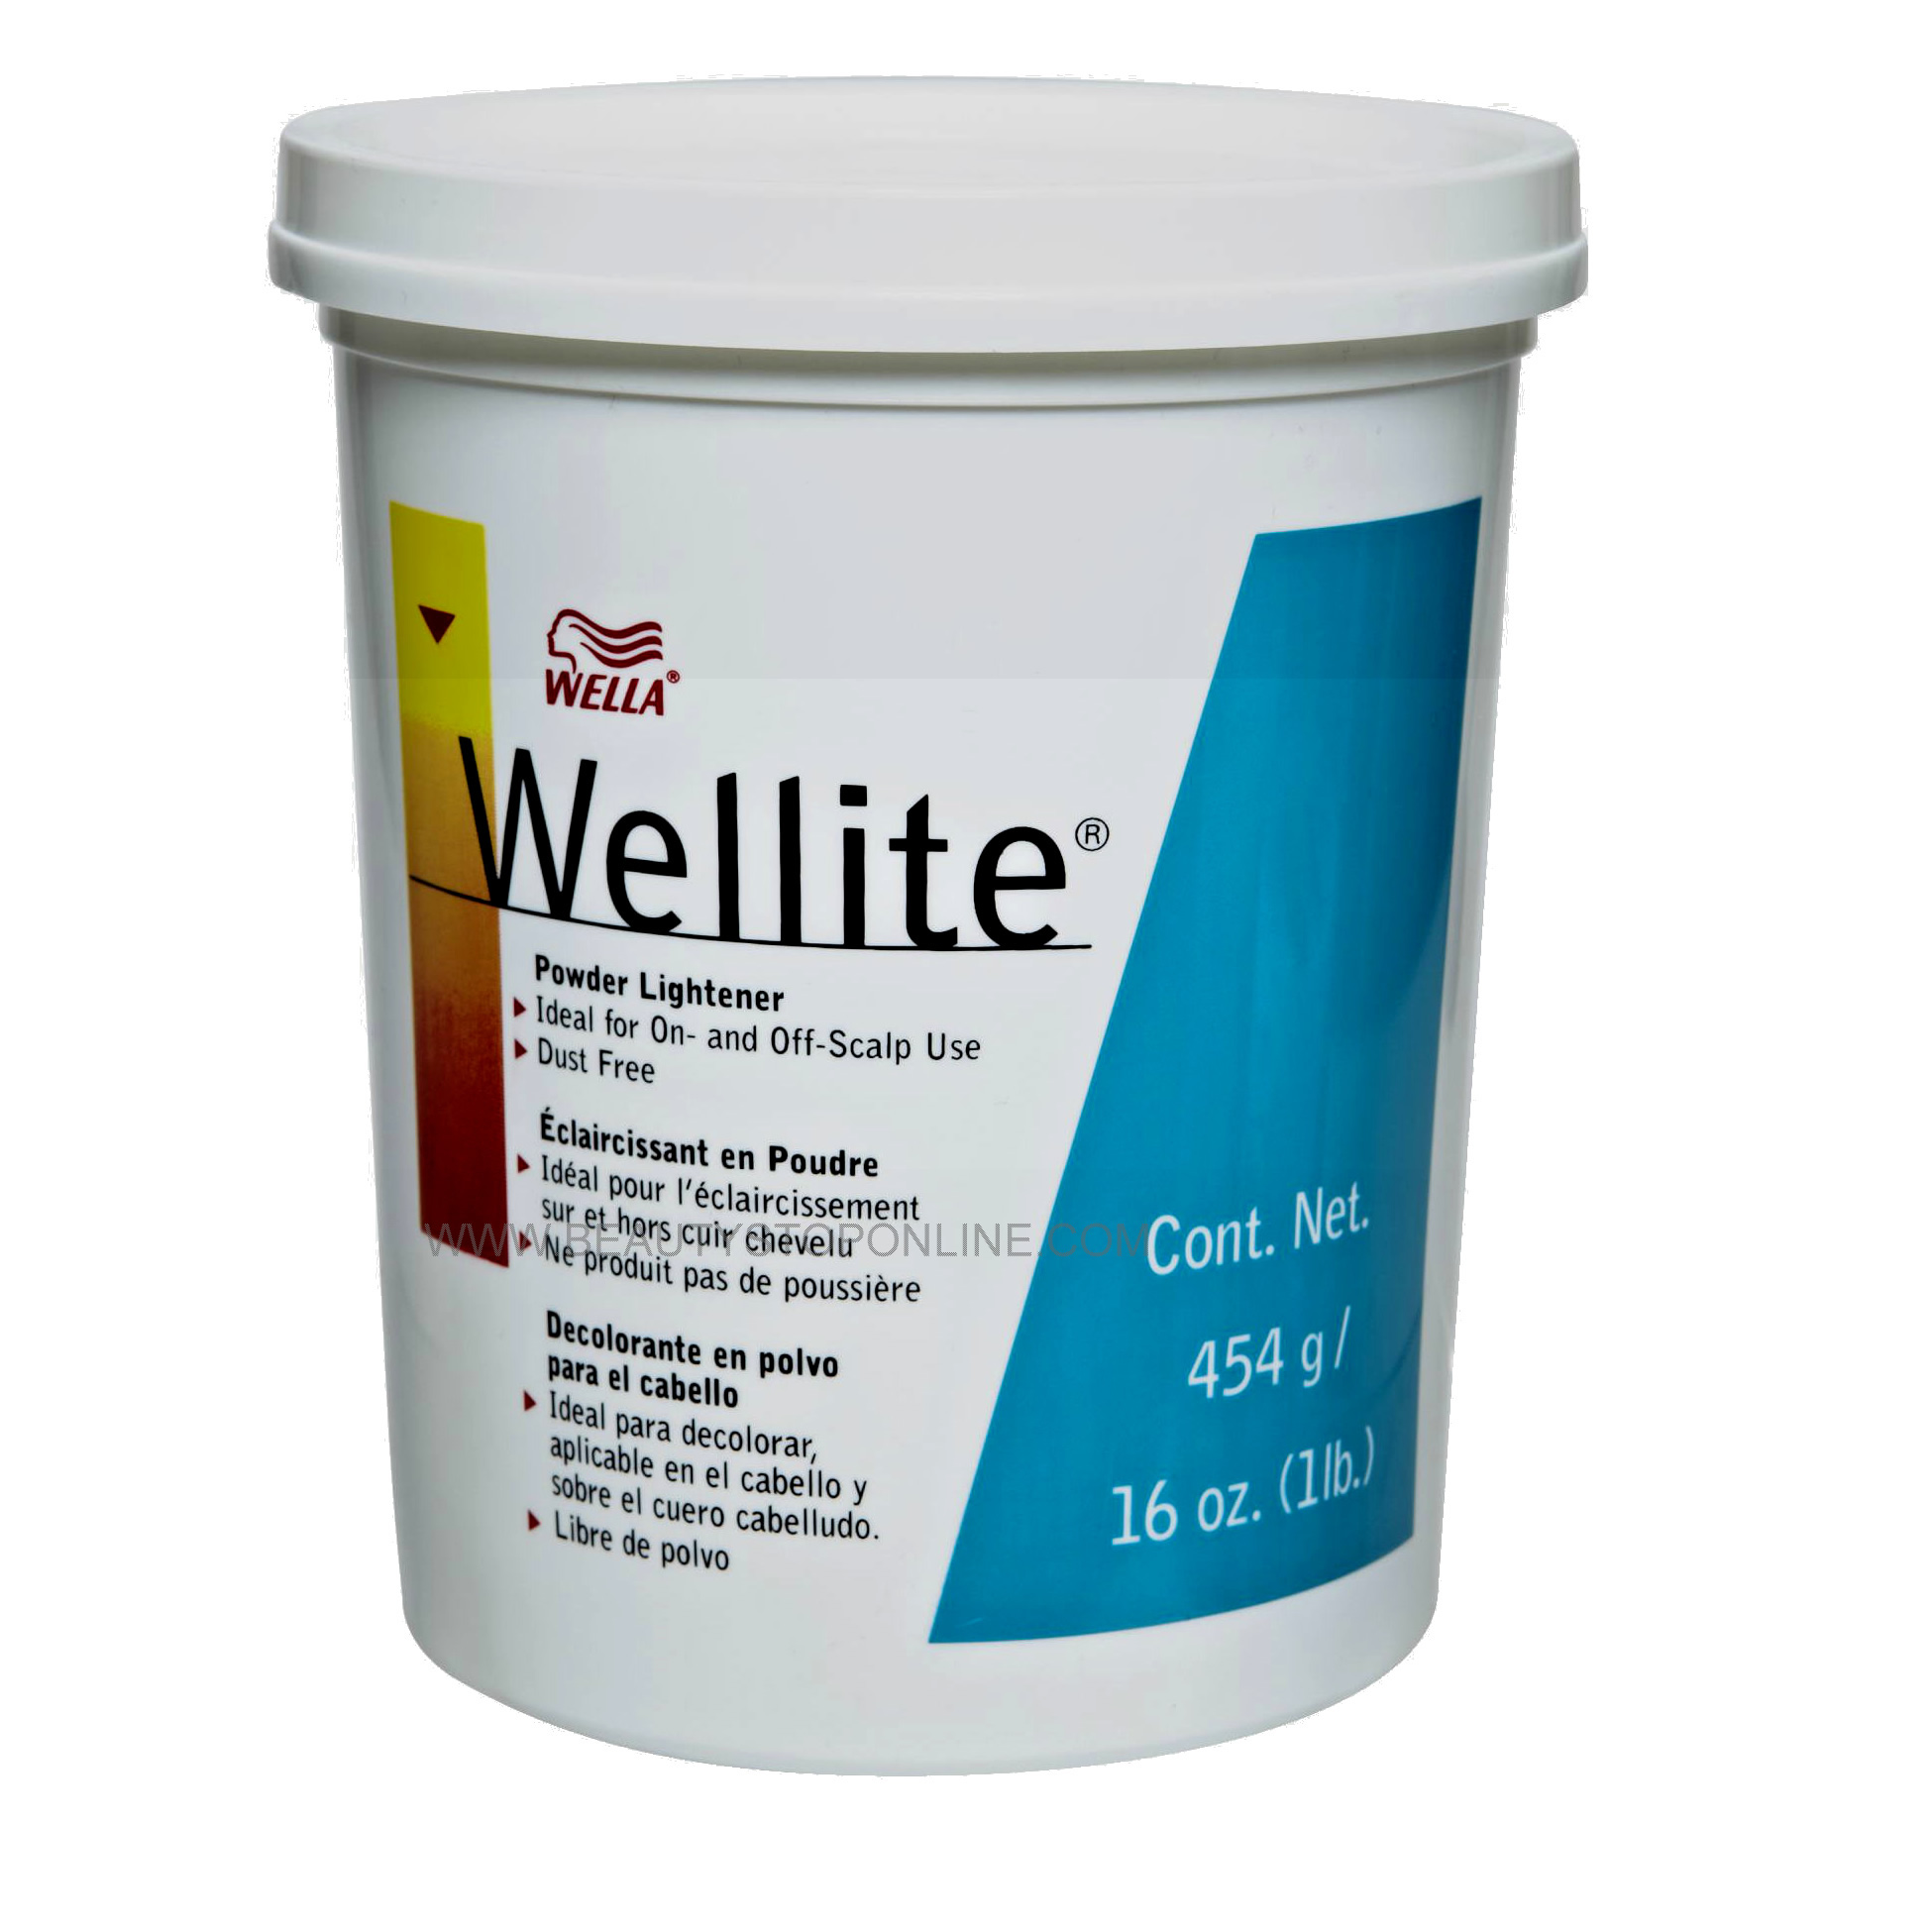 Wella Wellite Powder Lightener 16 oz Tub